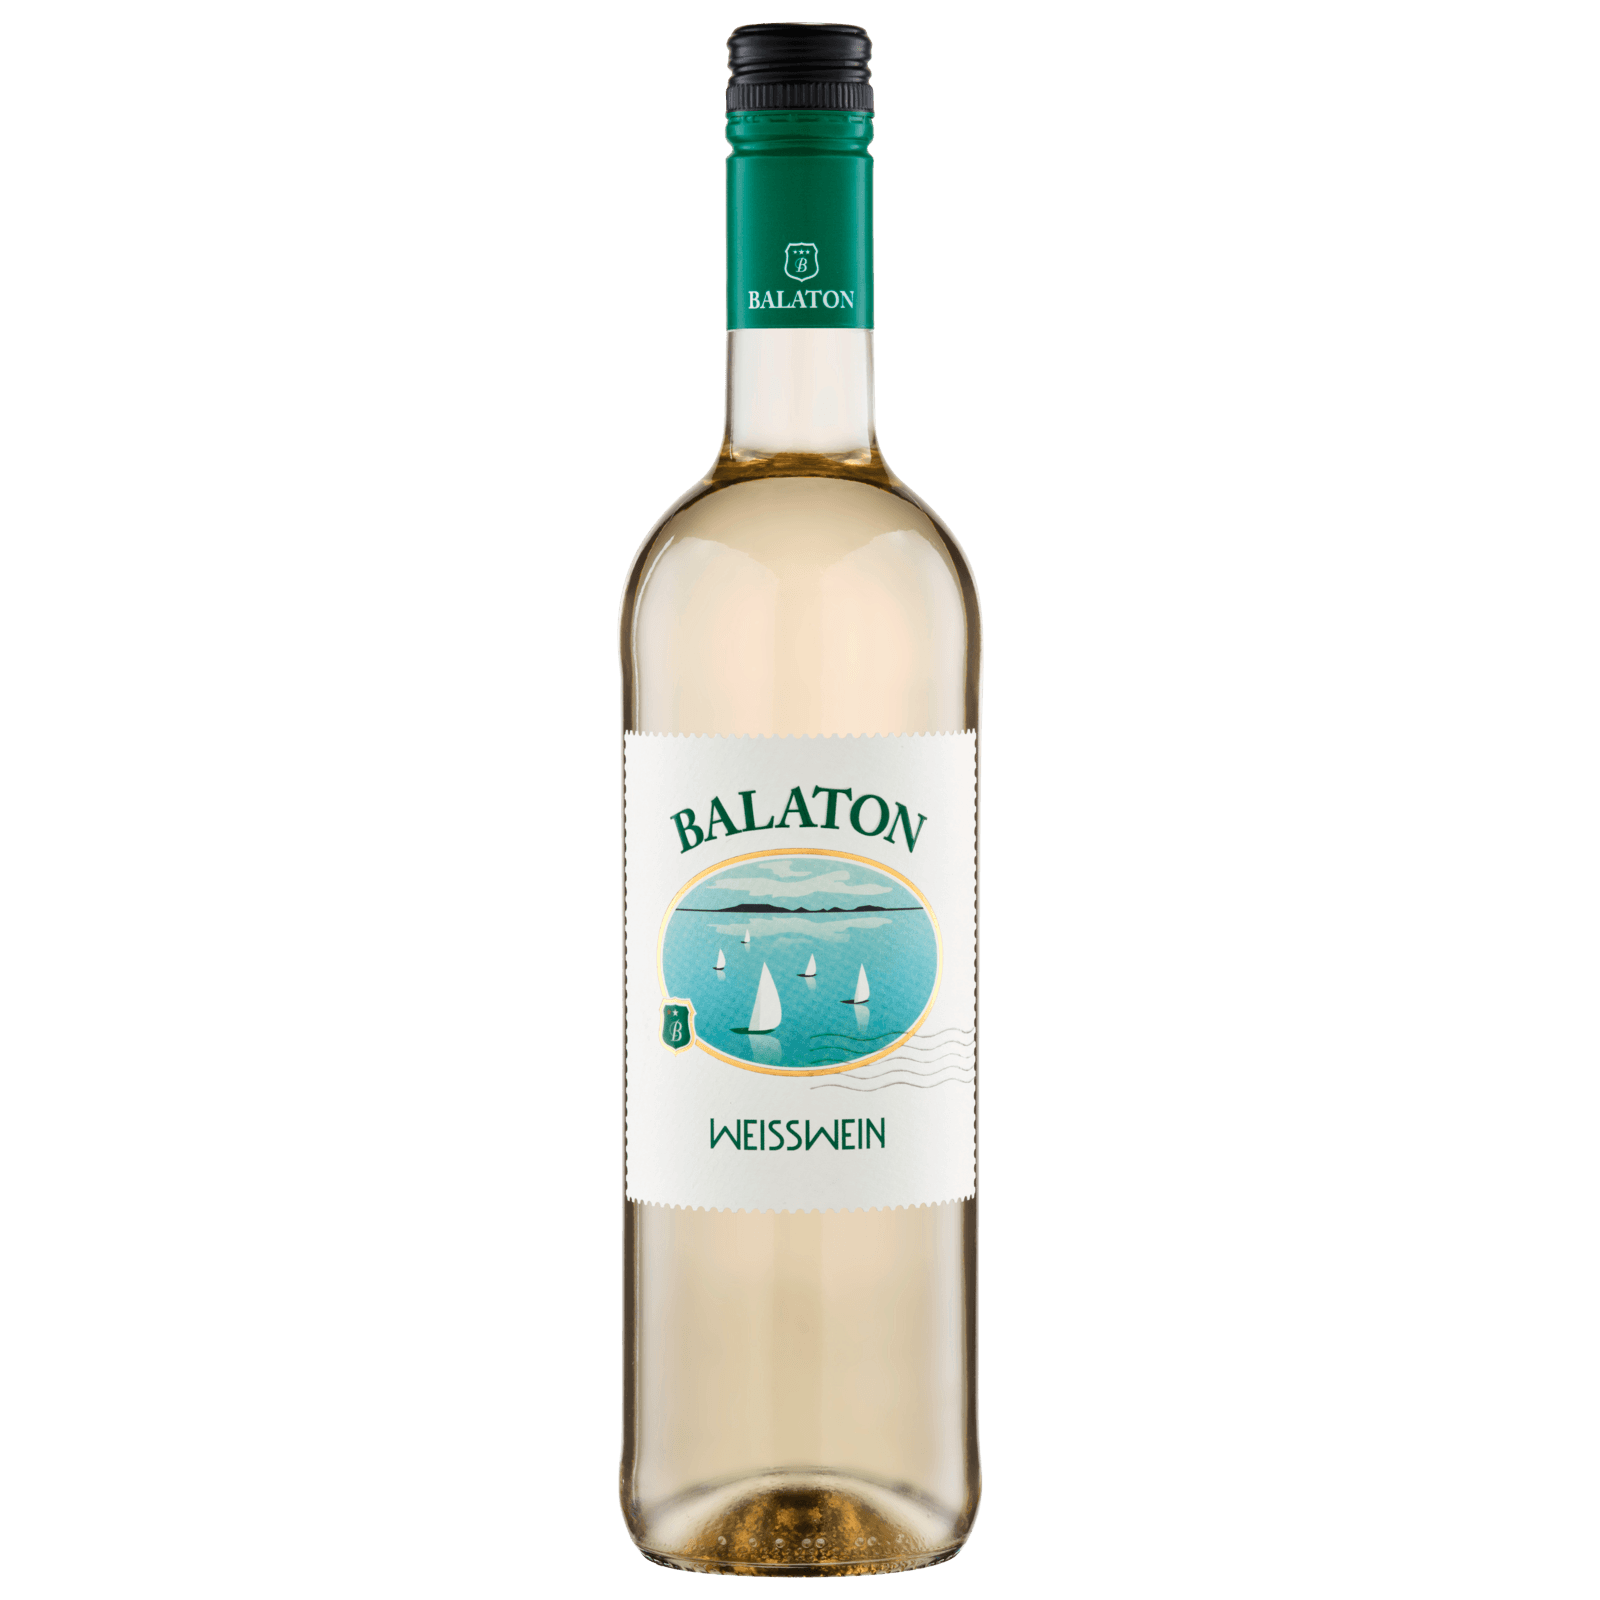 Balaton Weißwein lieblich 0,75l bei REWE online bestellen!